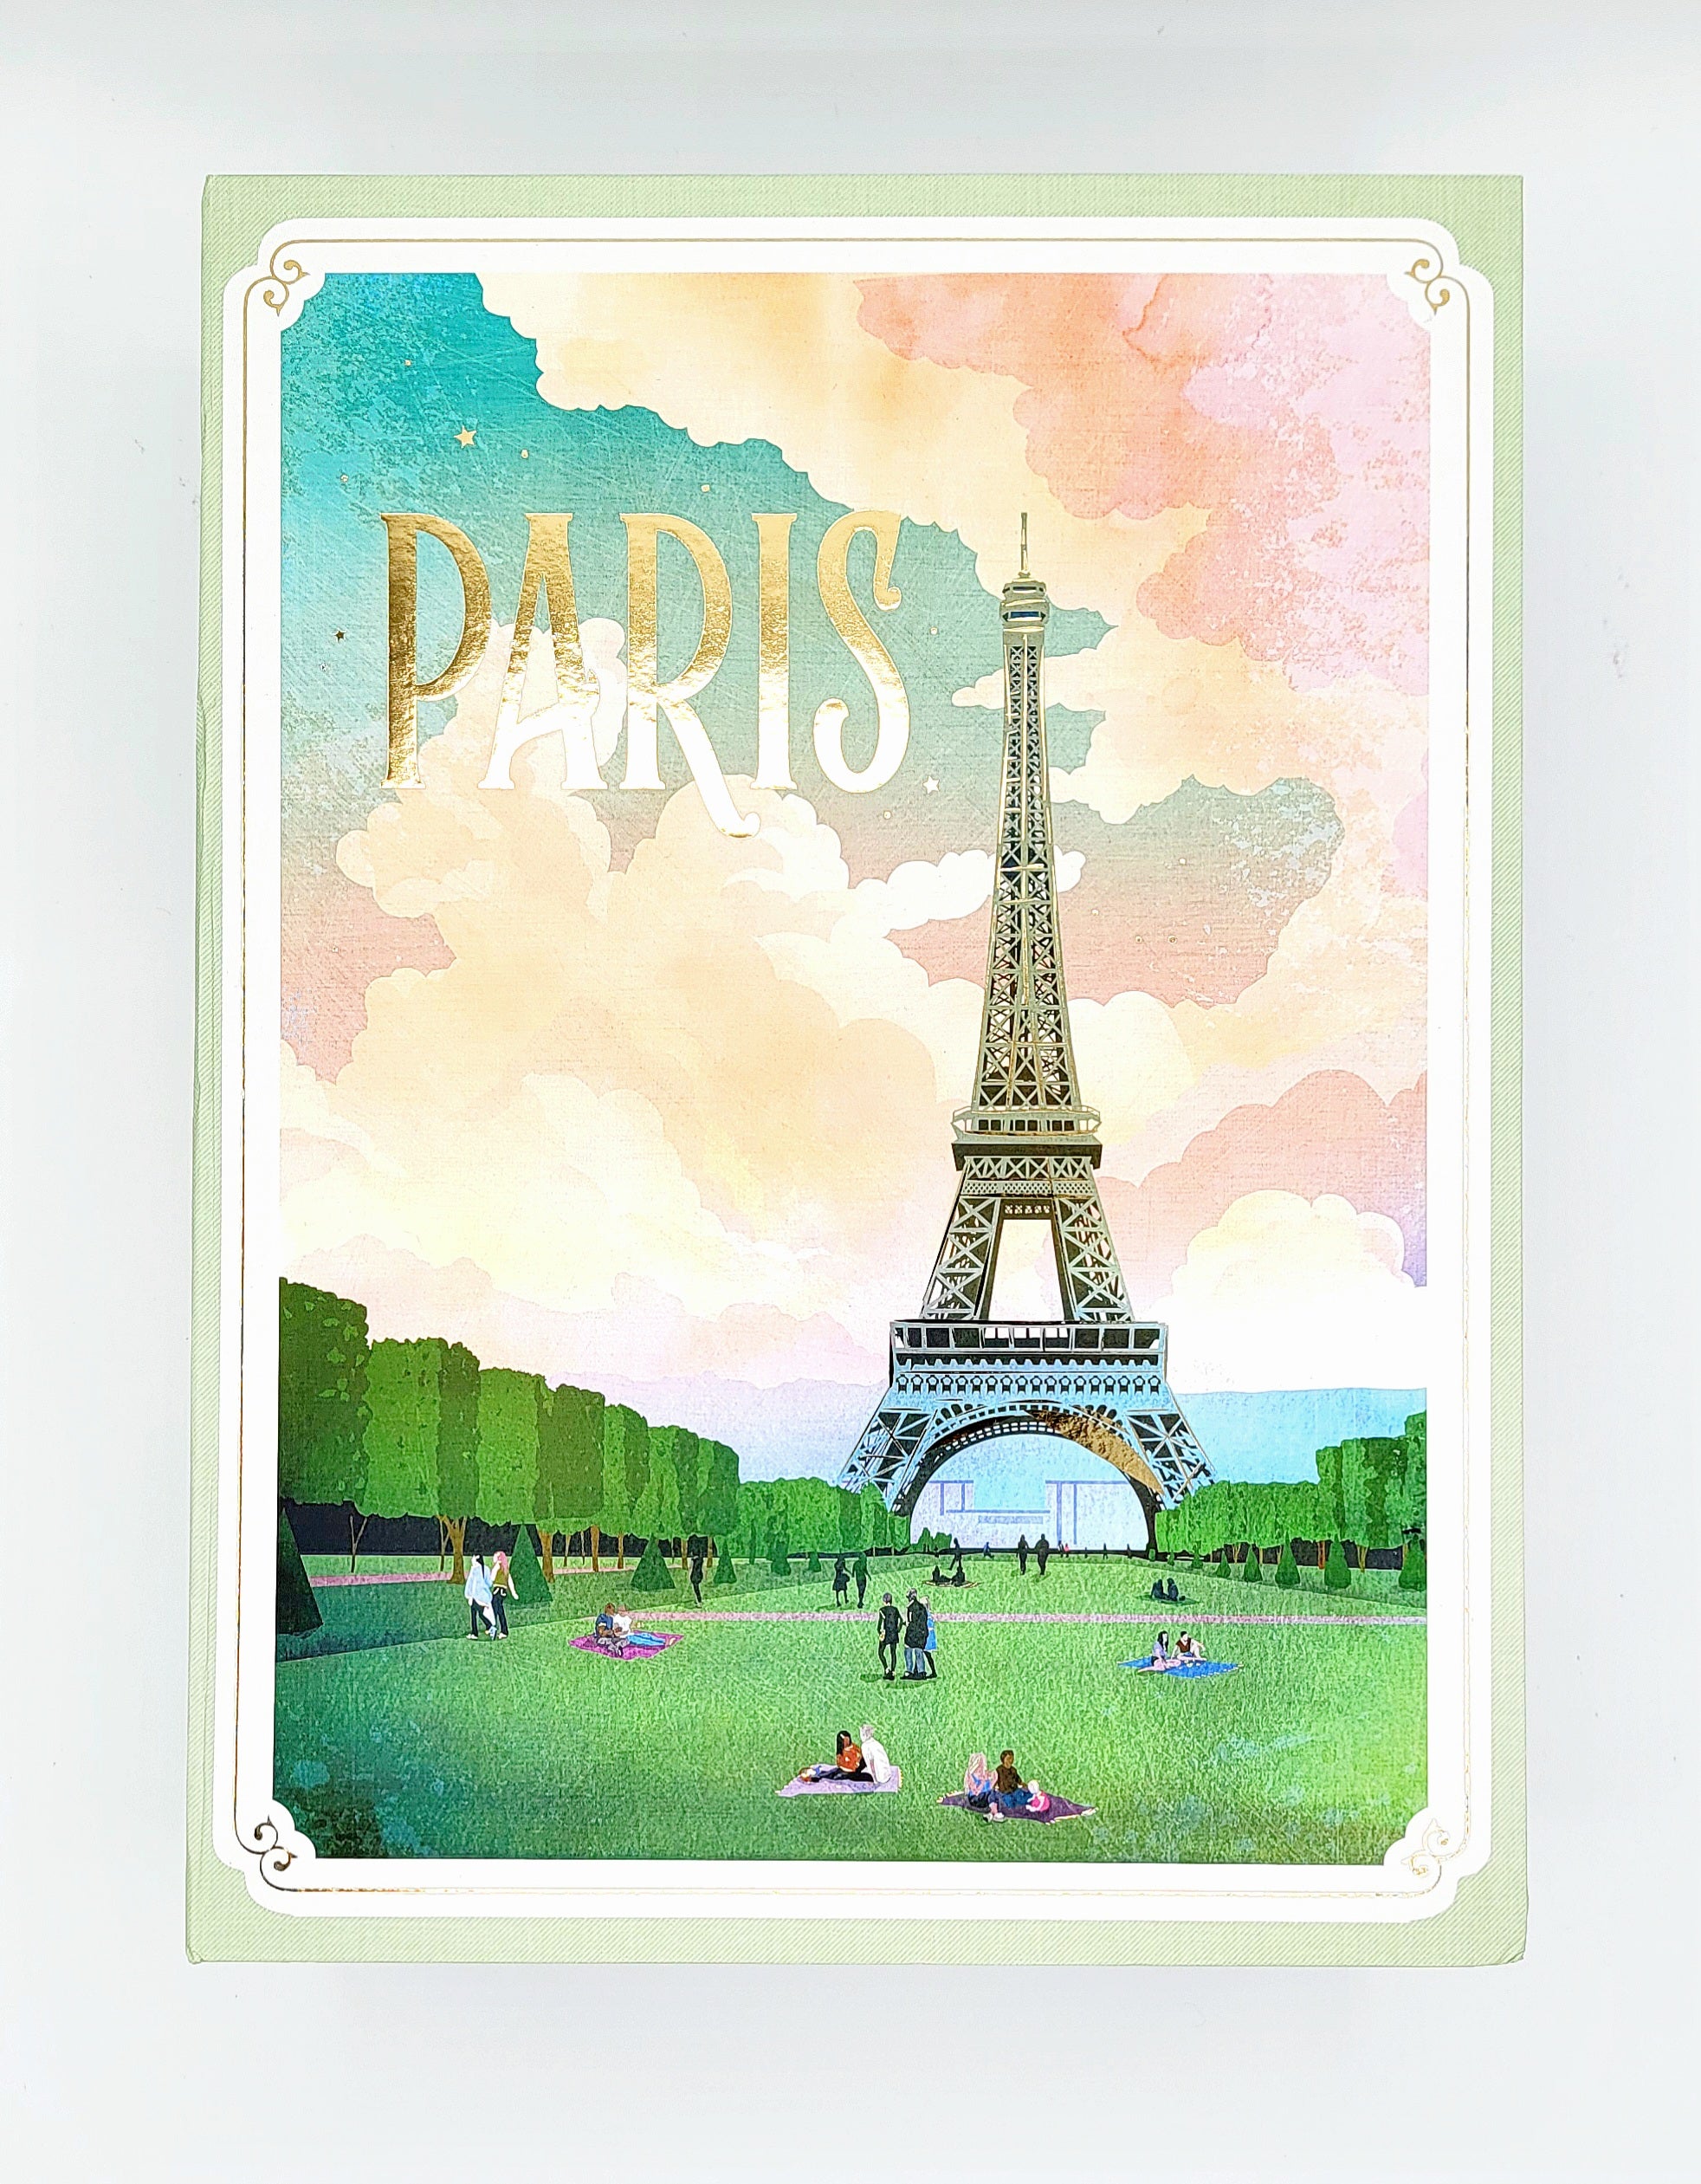 New York to Paris